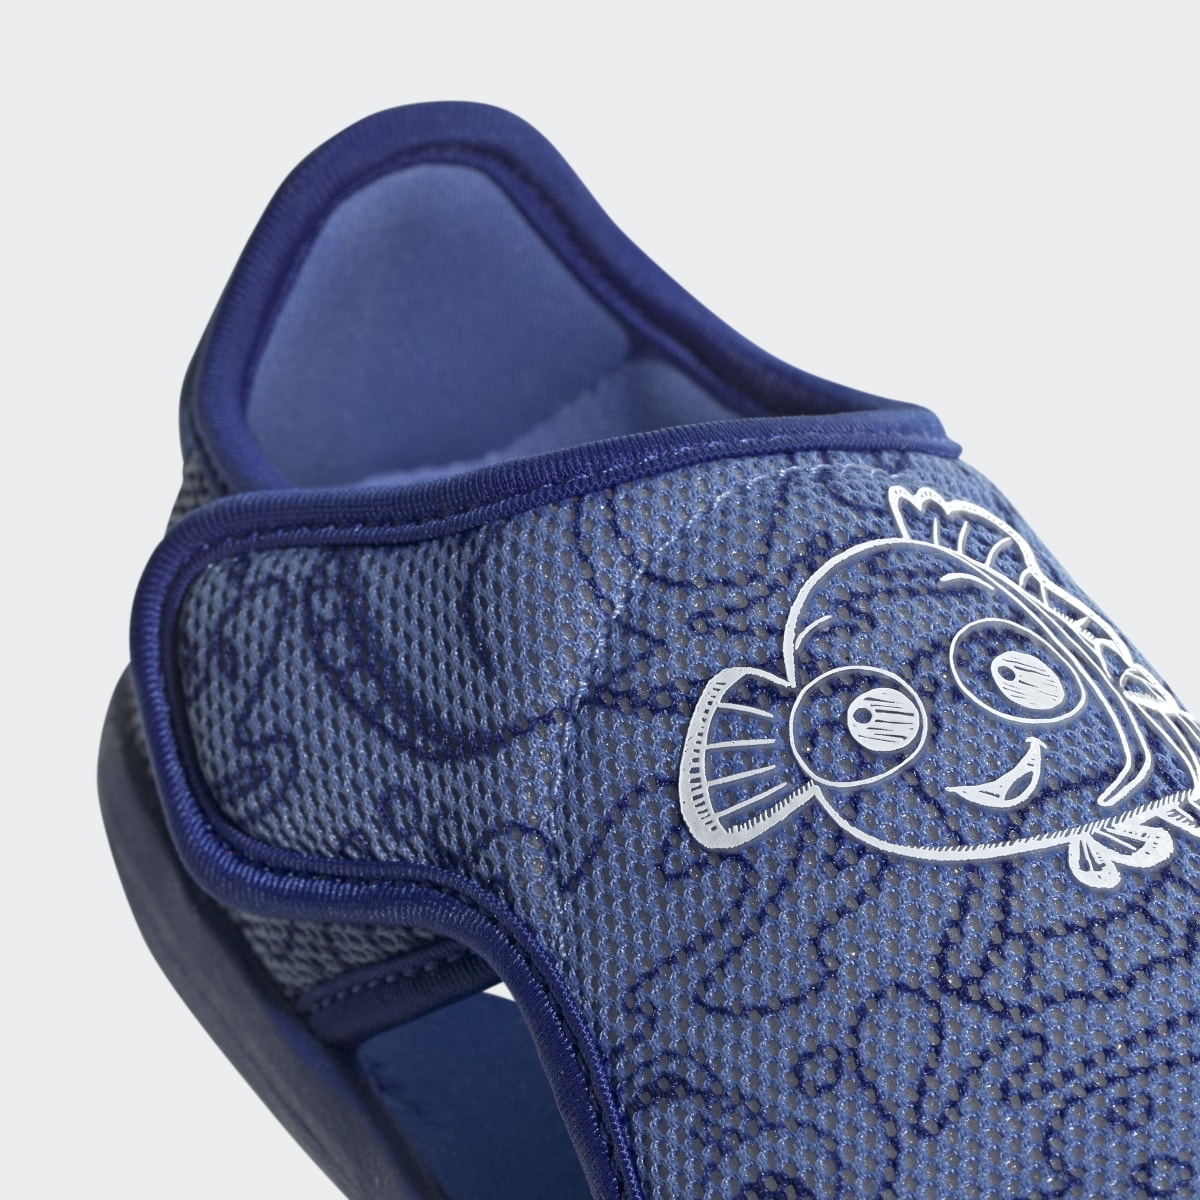 Adidas x Disney AltaVenture 2.0 Finding Nemo Swim Sandals. 9